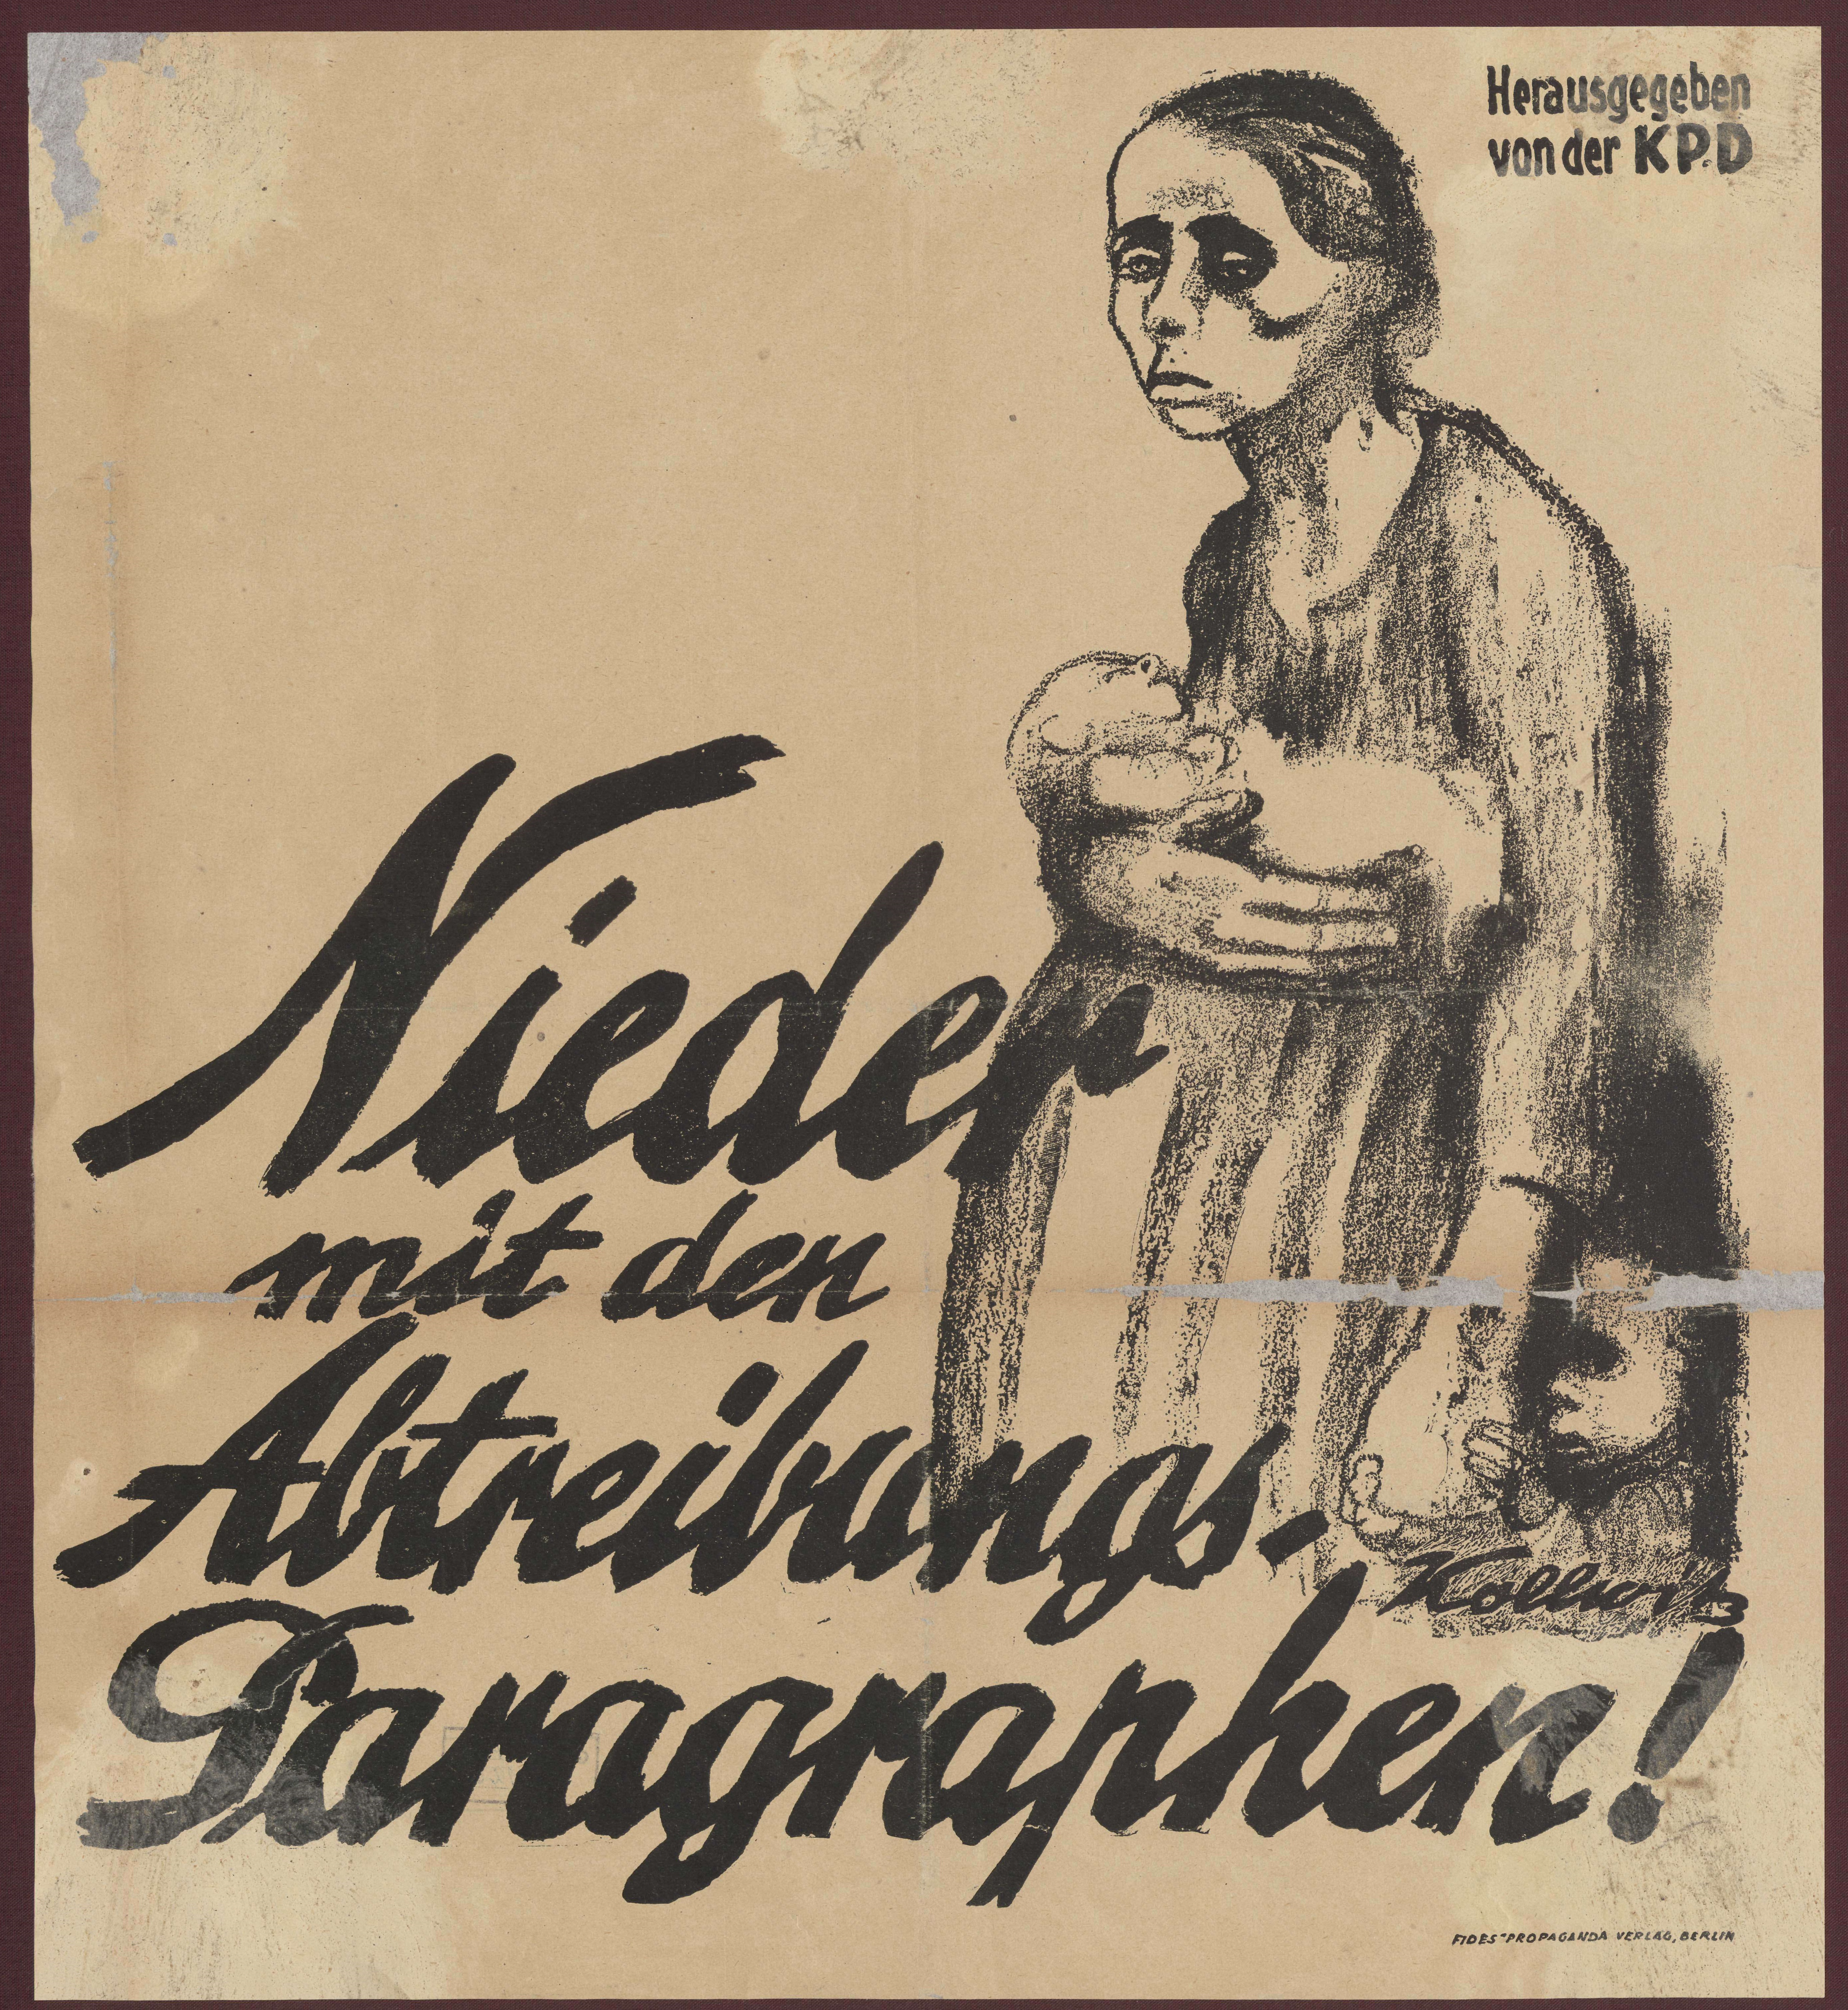 Nieder mit dem Abtreibungs-Paragraphen: Plakat der KPD, 1923